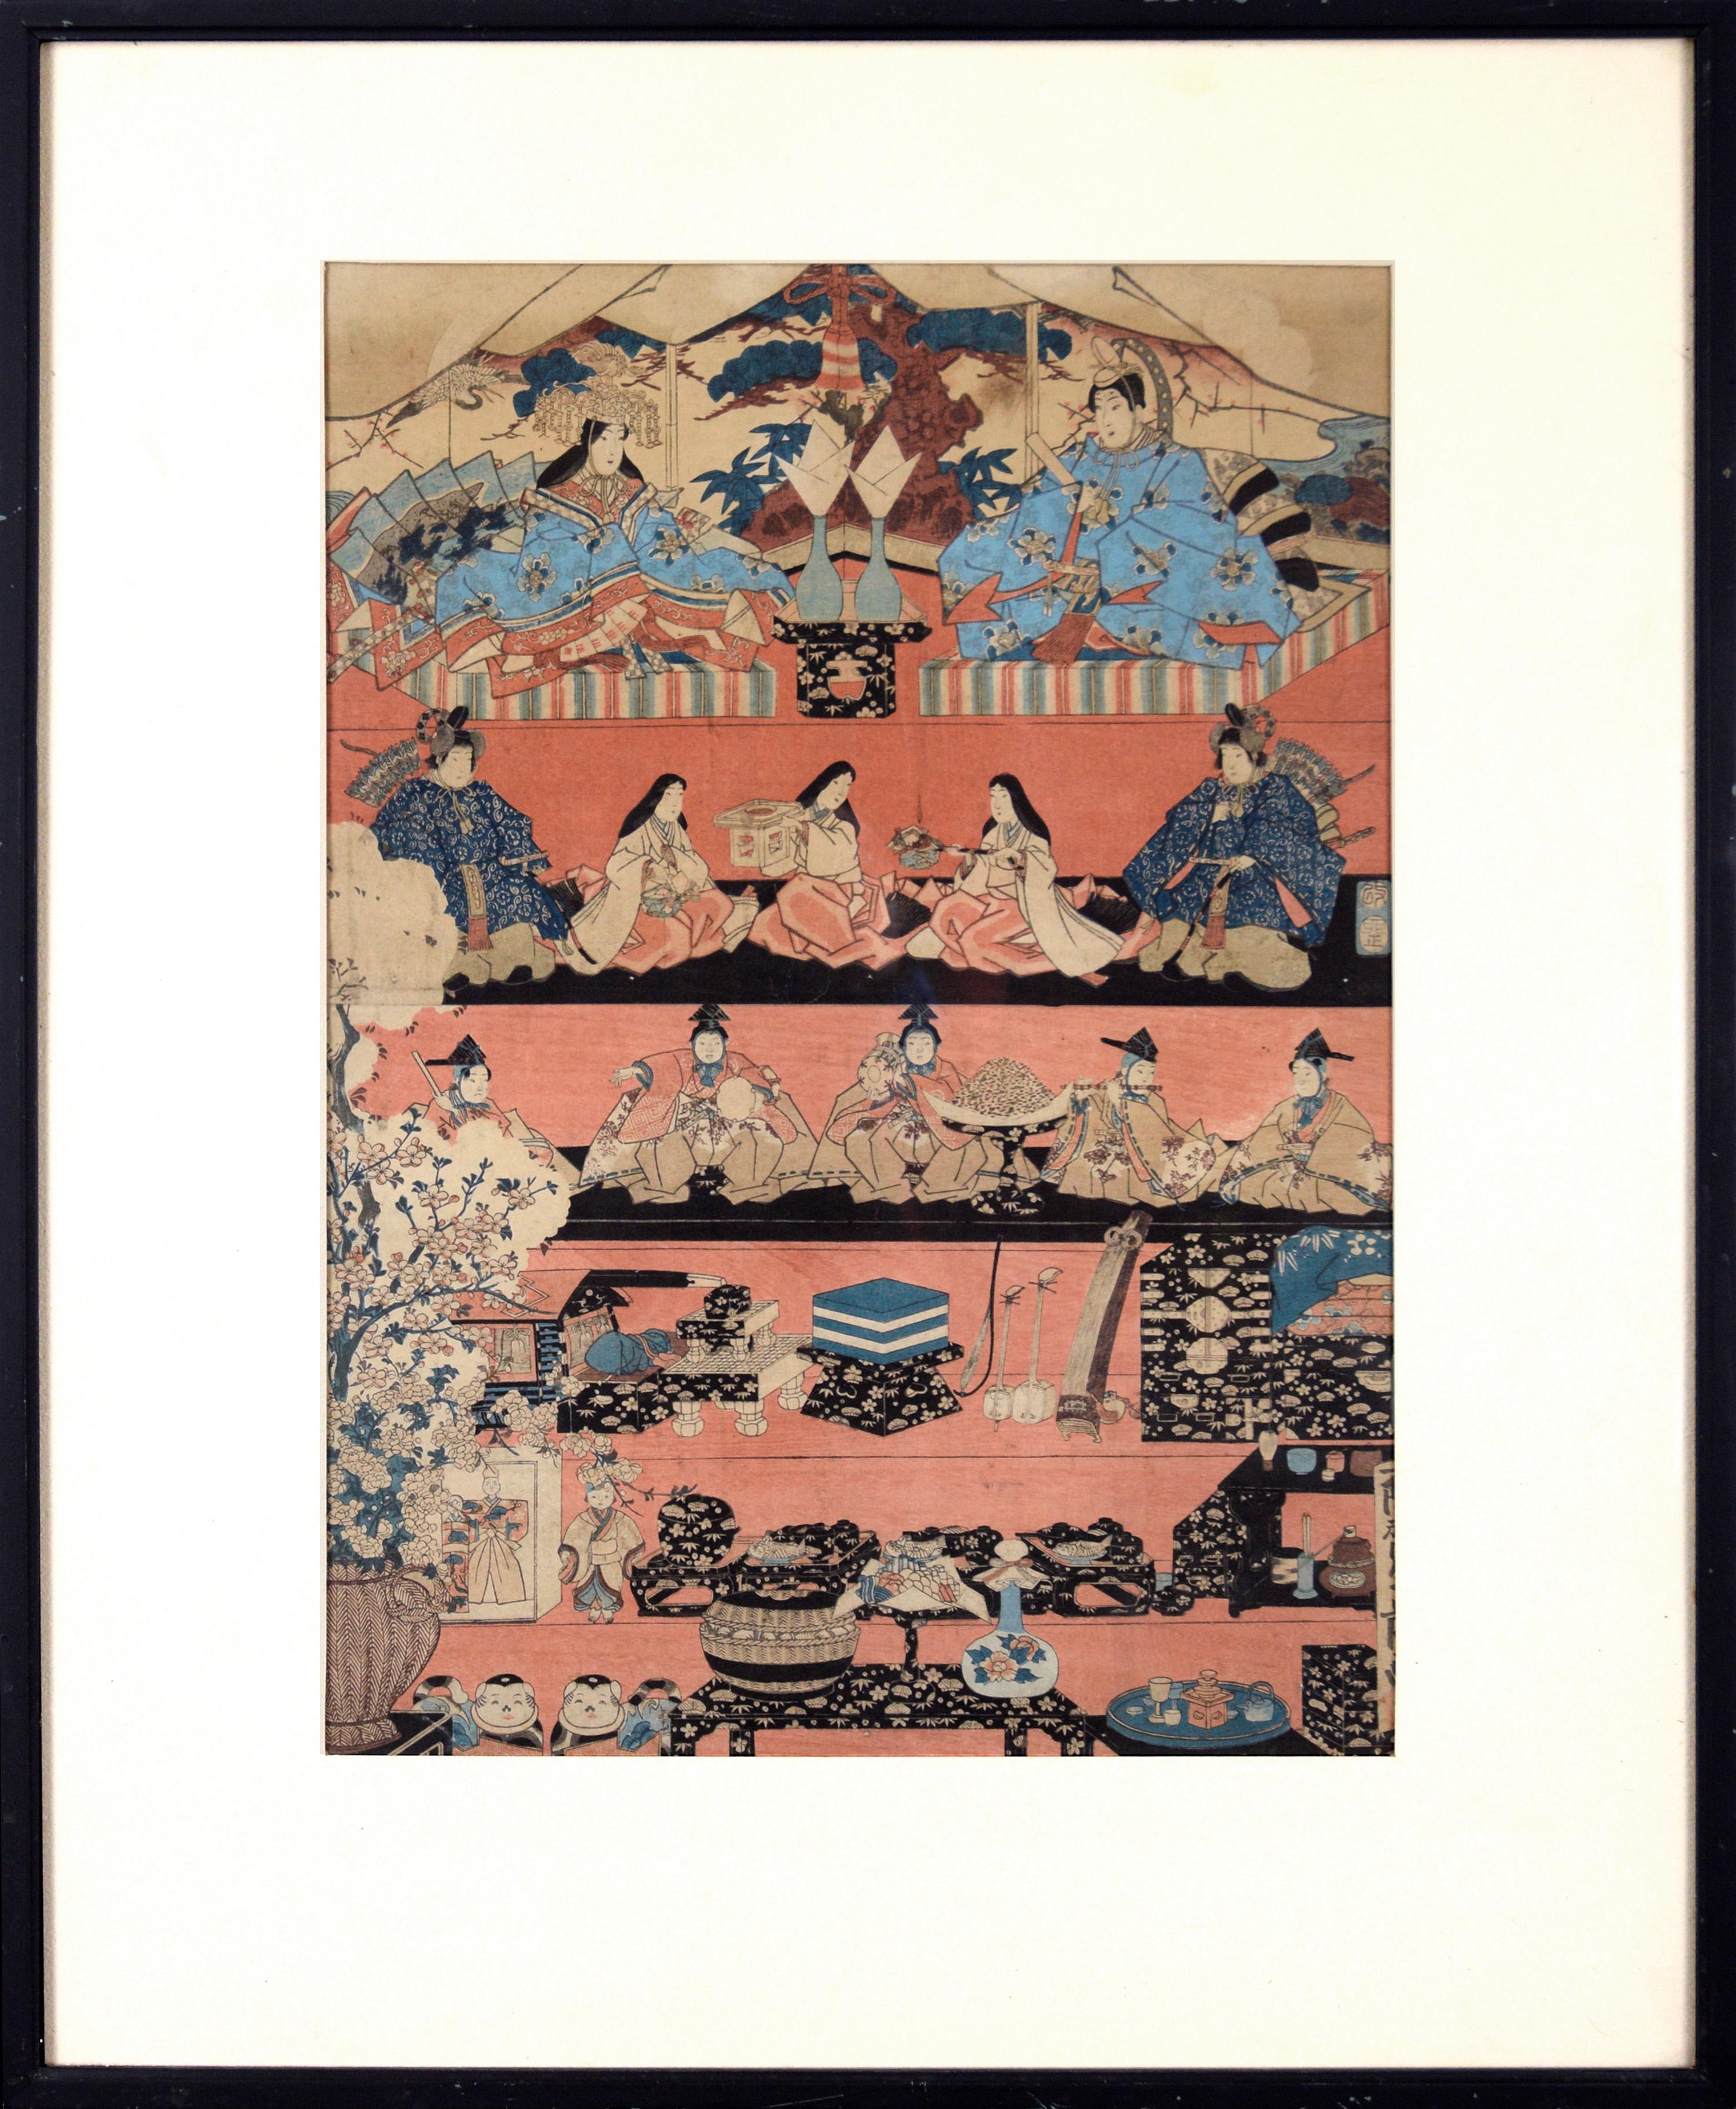 Utagawa Ichiyosai Toyokuni Landscape Print - "Various Himochi" Wagashi Festival Japanese Woodblock Print by Utagawa Toyokuni 